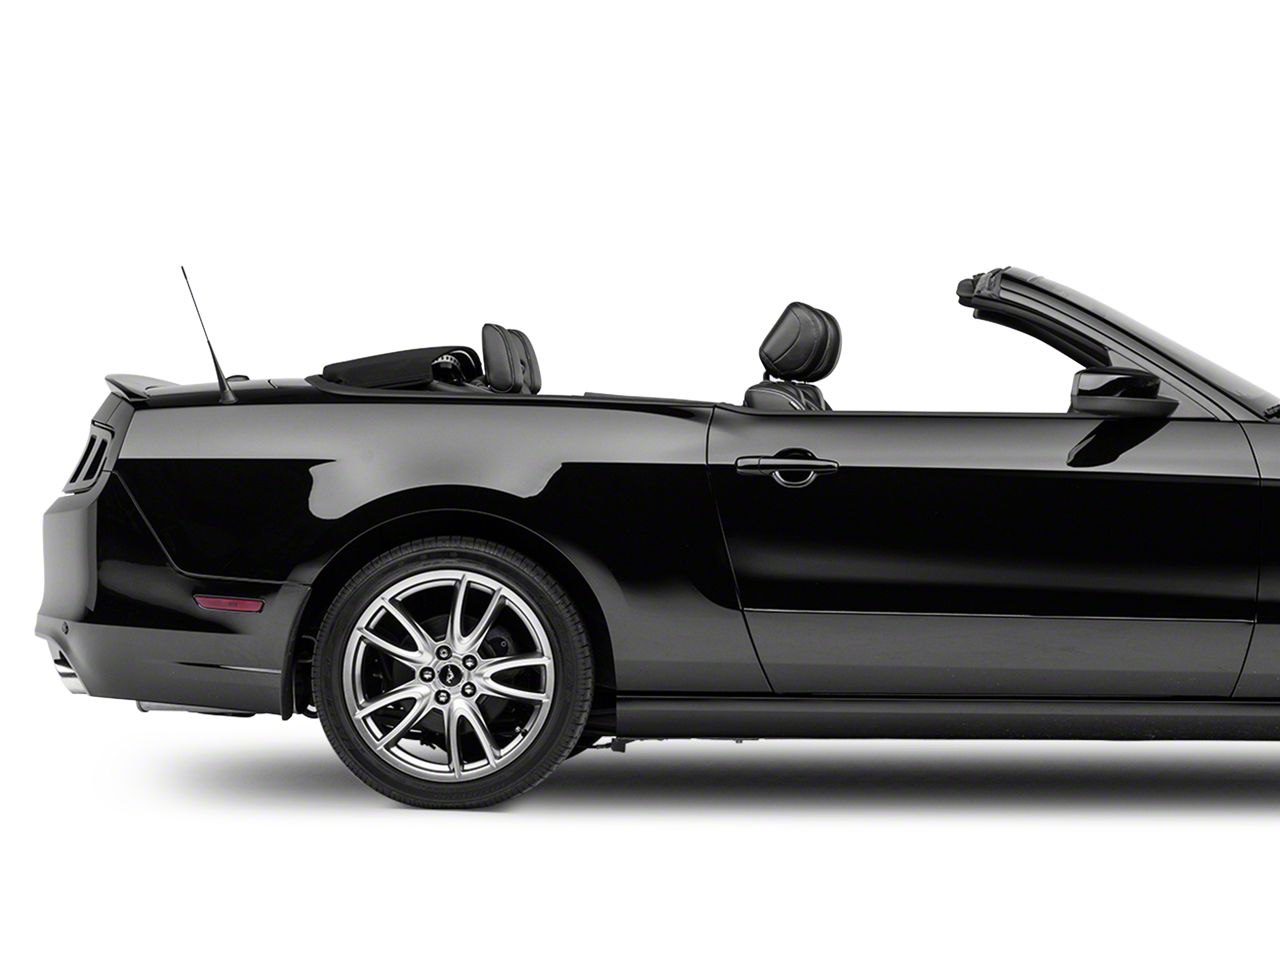 Mustang Convertible Top Parts 2010-2014